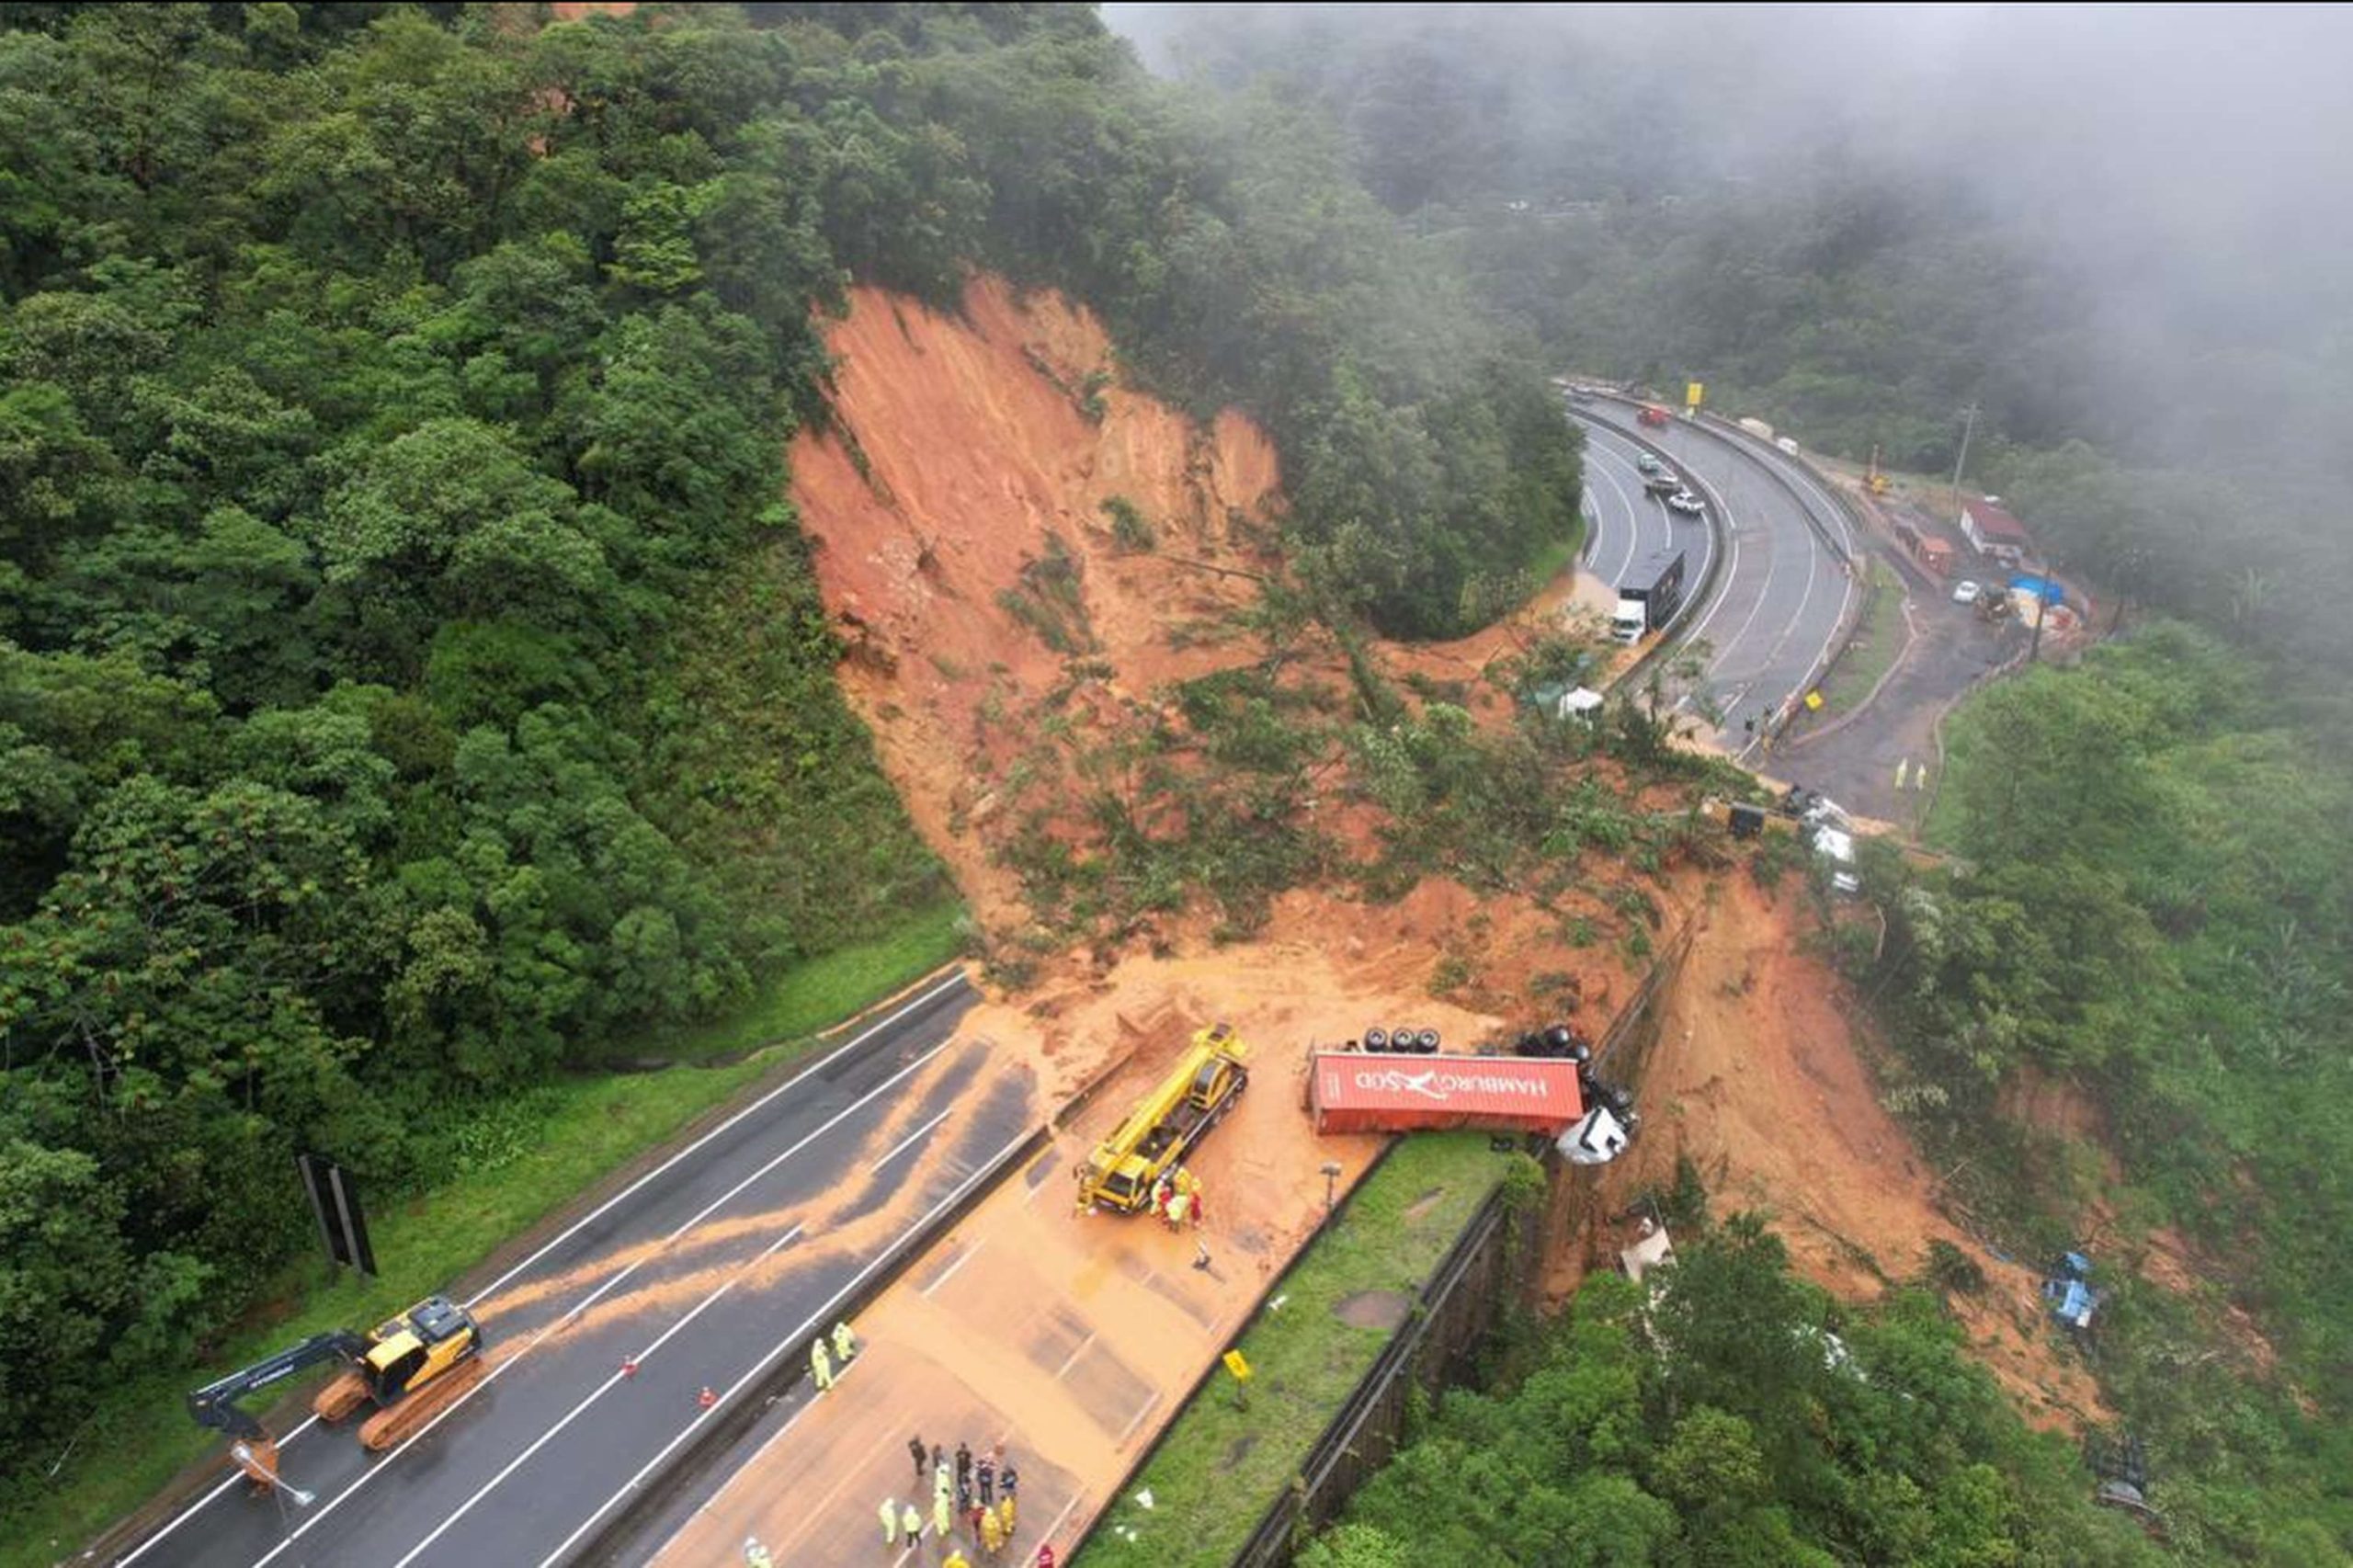 deslizamento de terra na br-376 - paraná - rodovia bloqueada - mortes